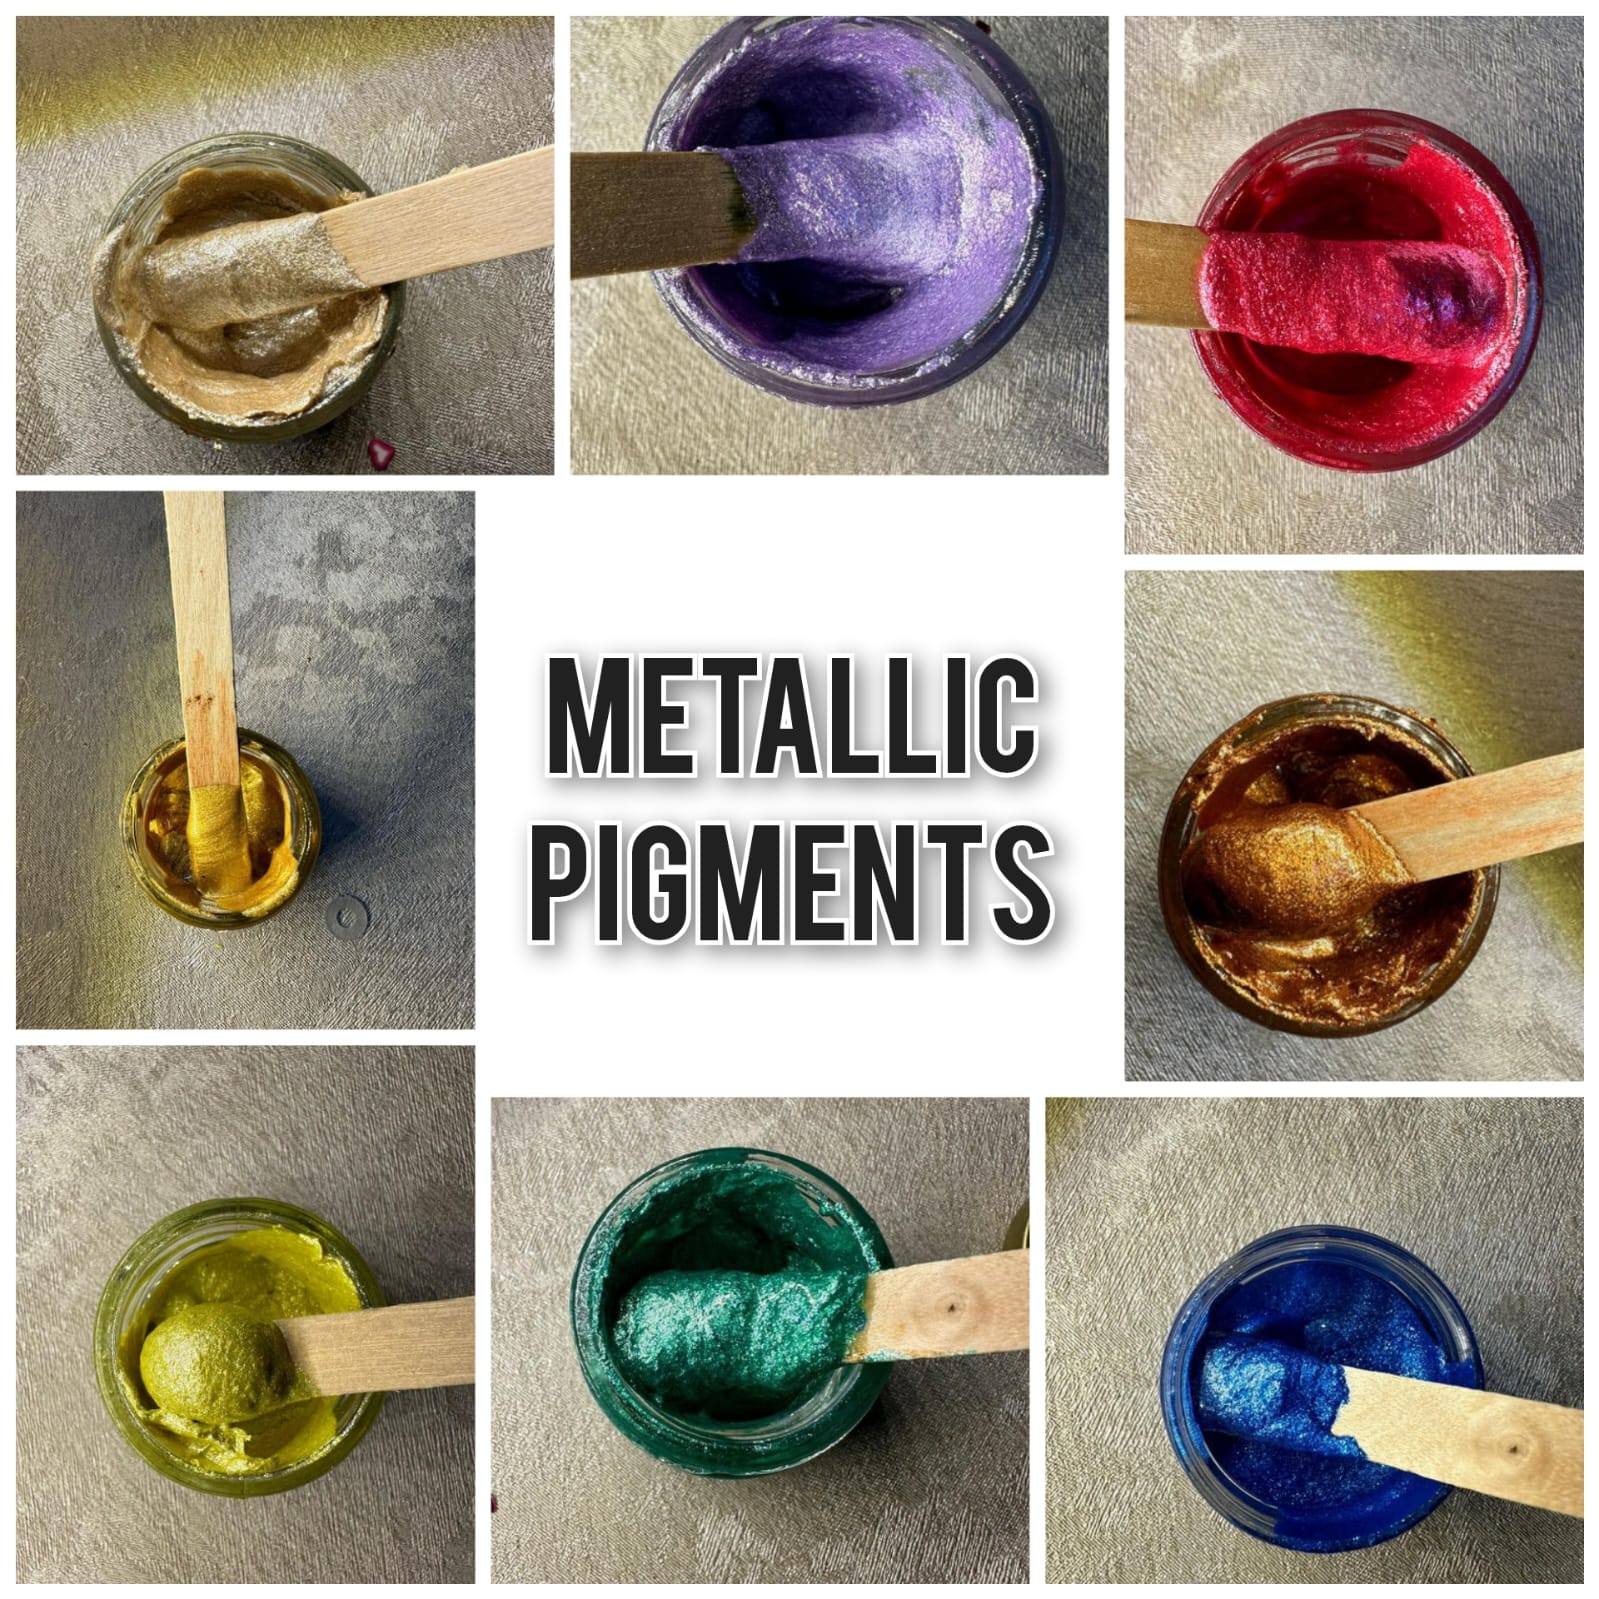 Metallic pigment